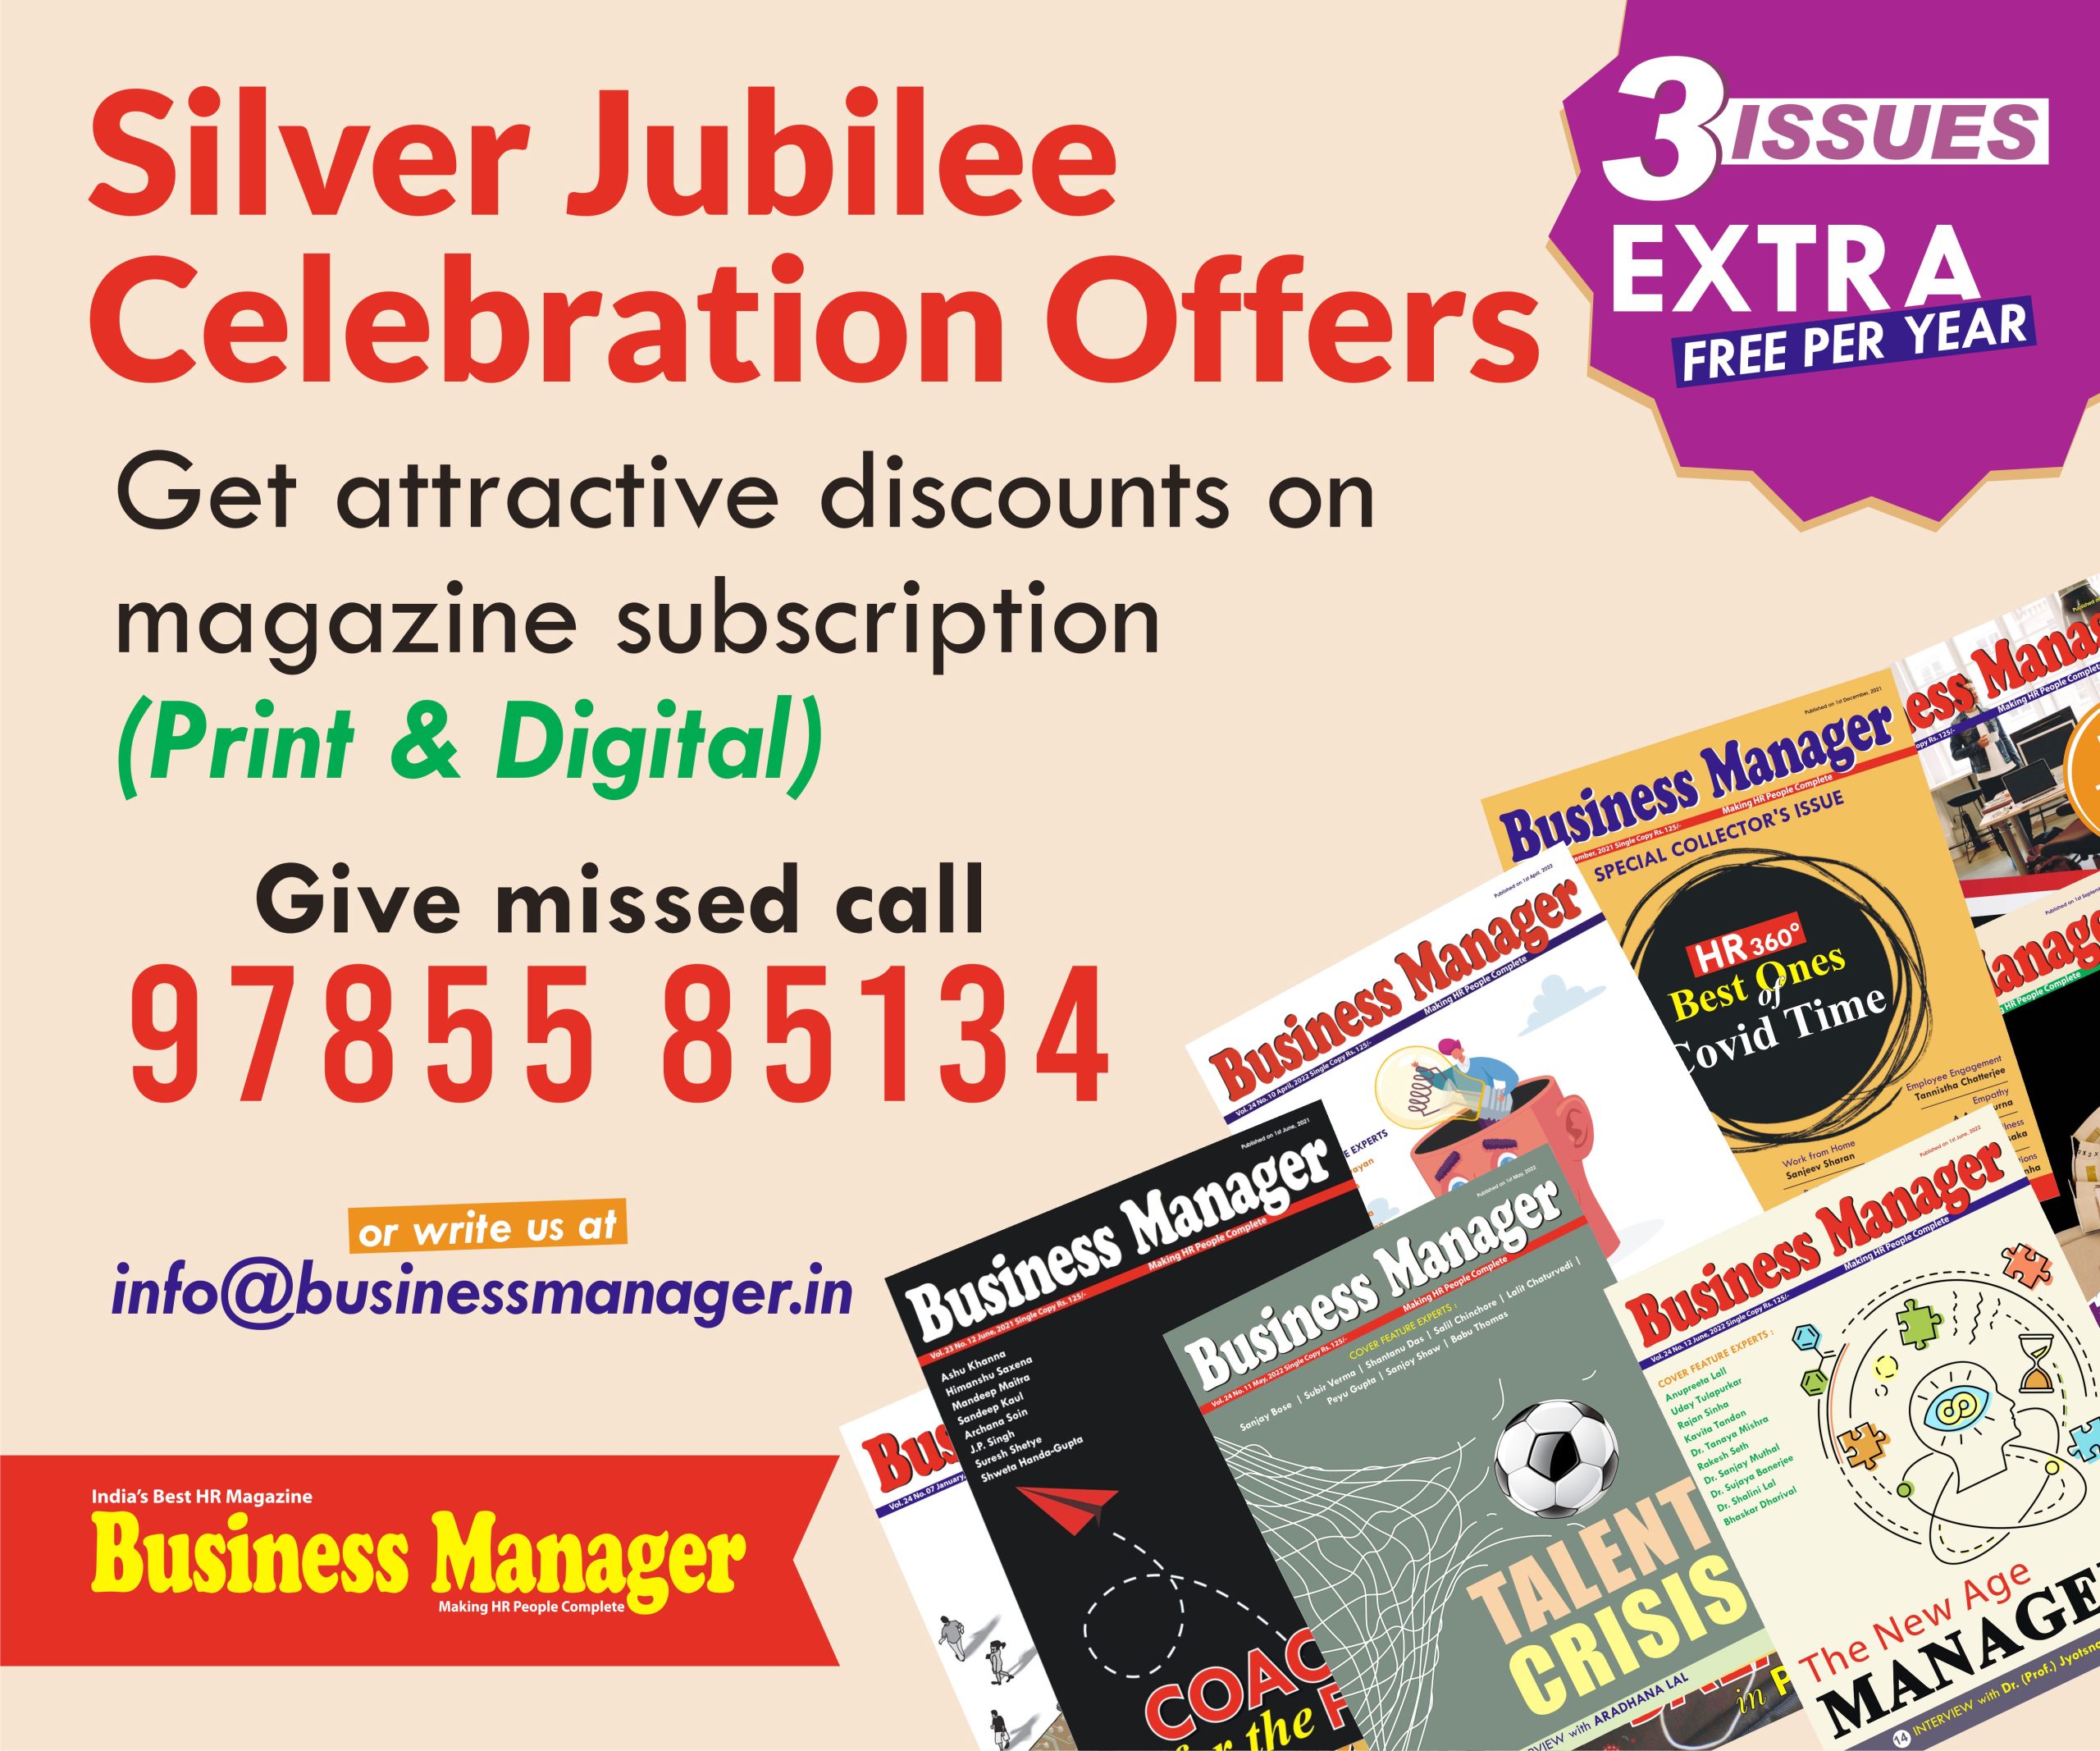 Silver-Jubilee-Celebration-offer-300x250-2-scaled.jpg